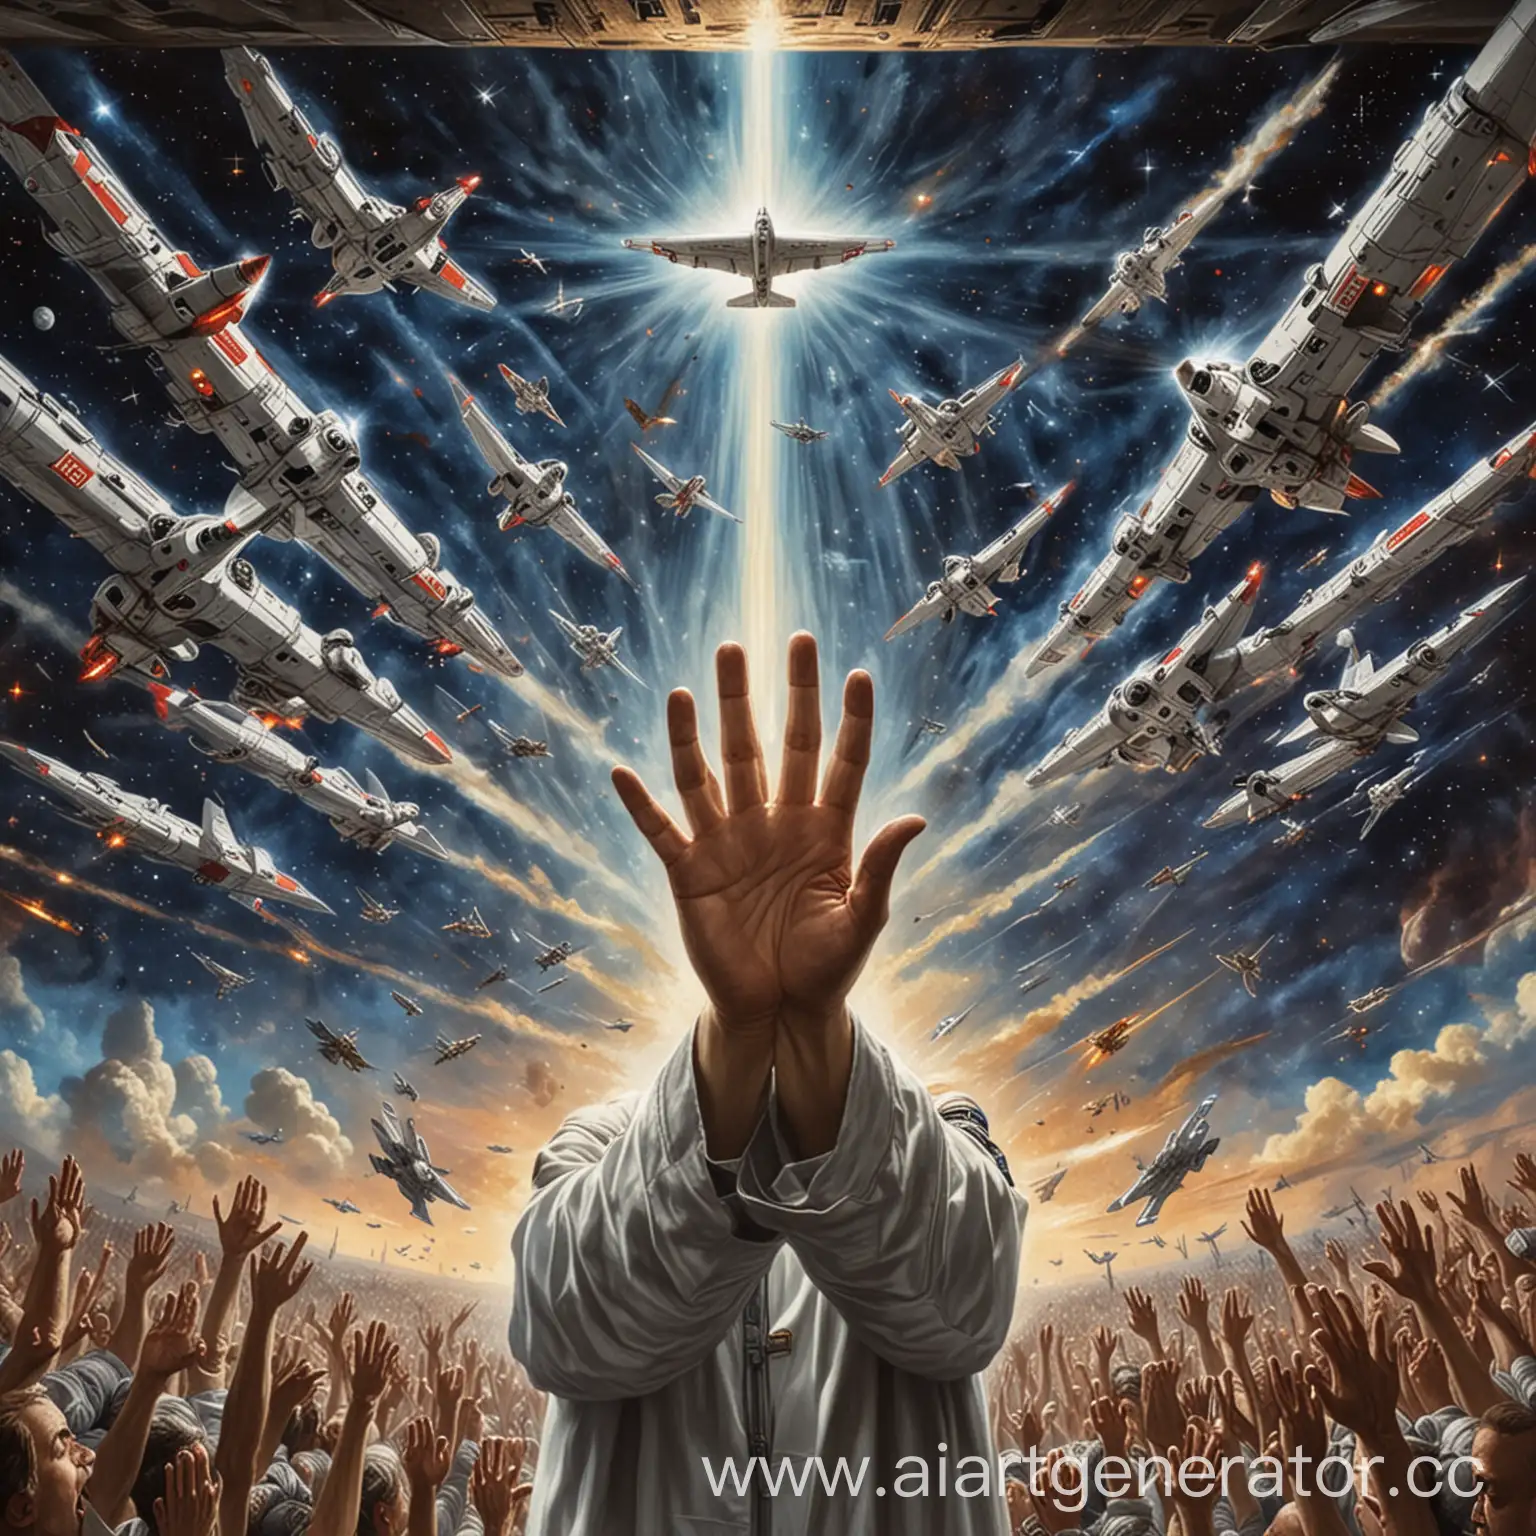 Святой дух протягивающий руки перед собой, на фоне космический флот Третьего Рейха